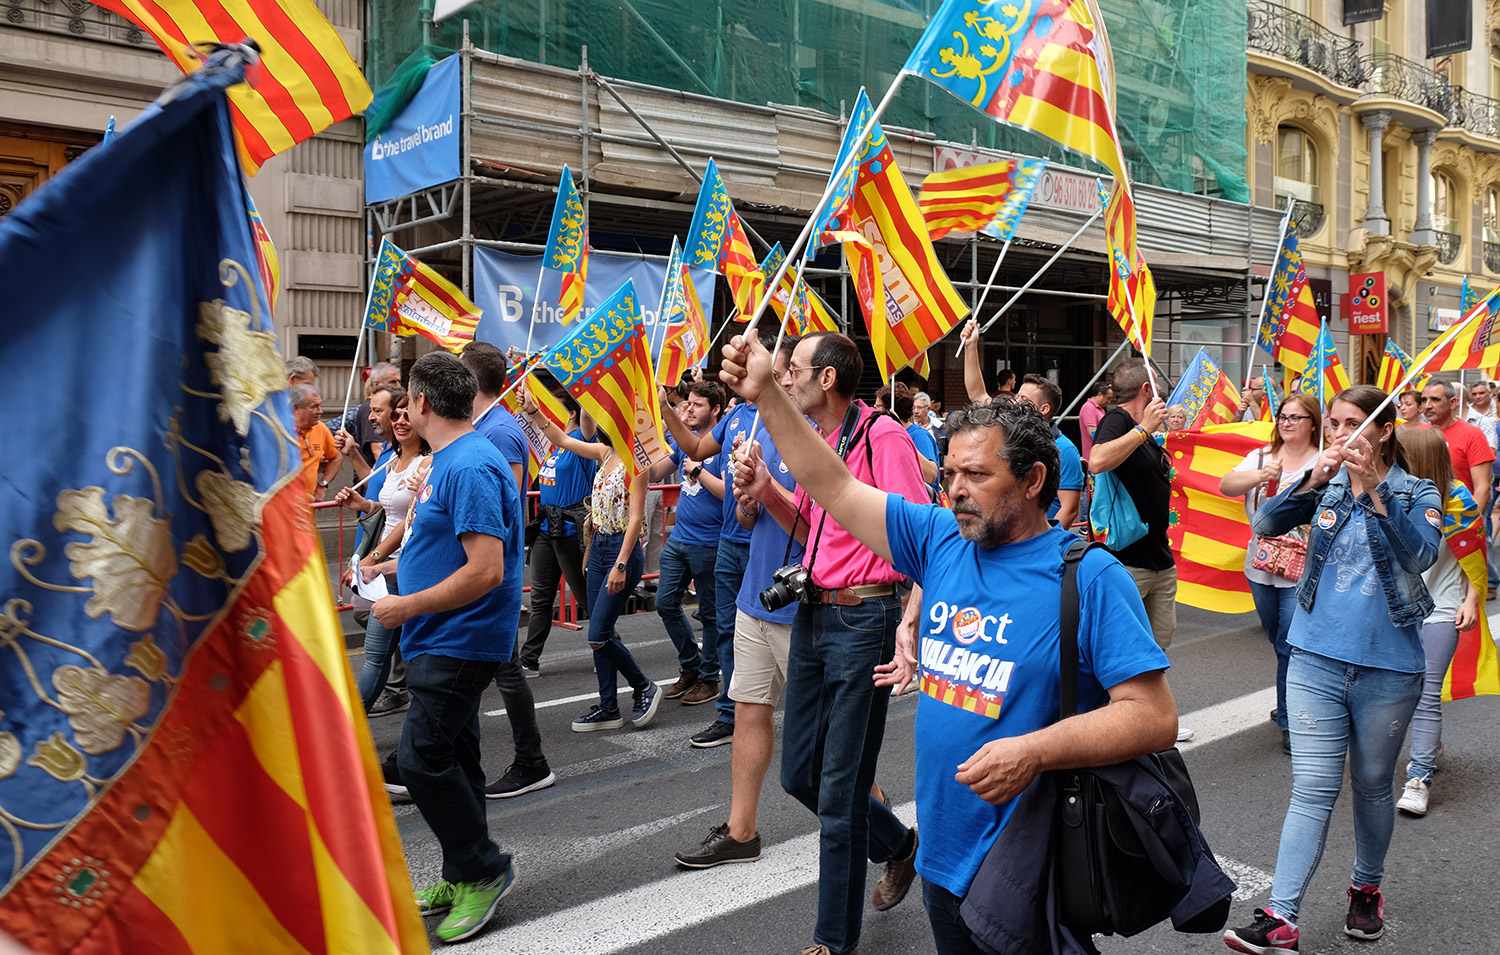 Valencians march to celebrate 9 October - Día de la Comunidad Valenciana